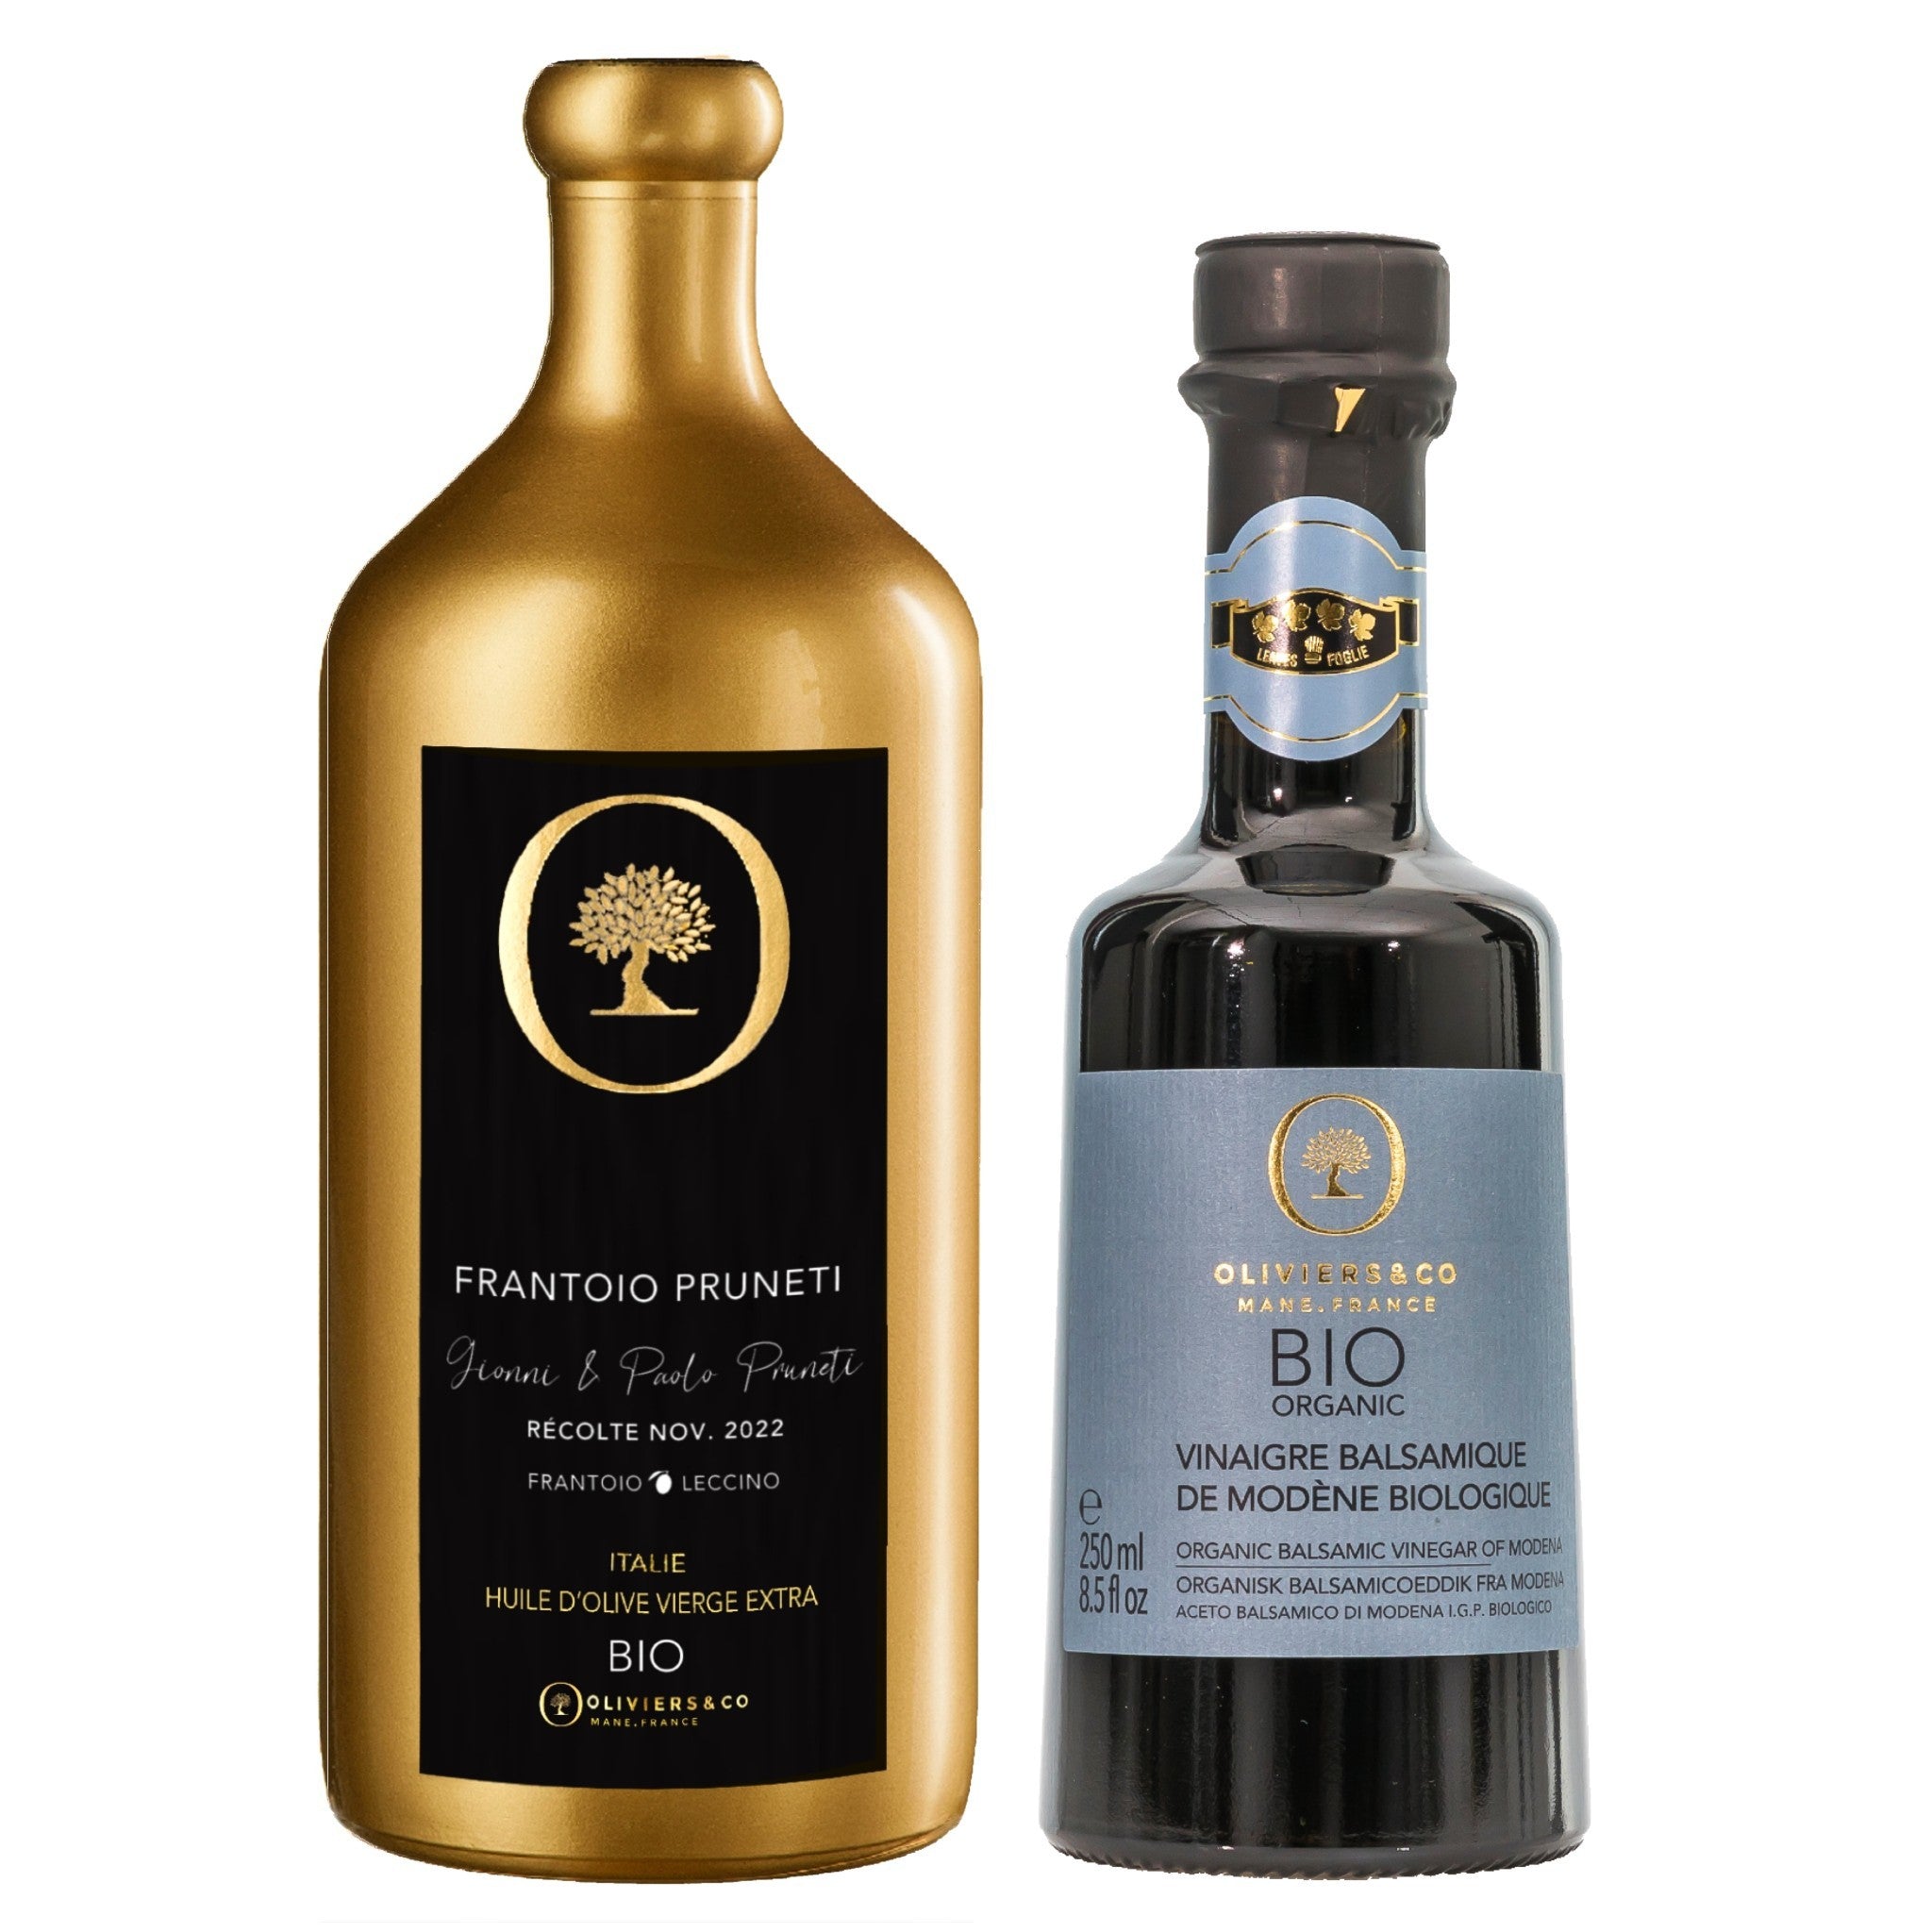 Økologisk italiensk olie eddike sæt frantoio pruneti ekstra jomfru olivenolie og lagret balsamico fra Modena, Oliviers & Co